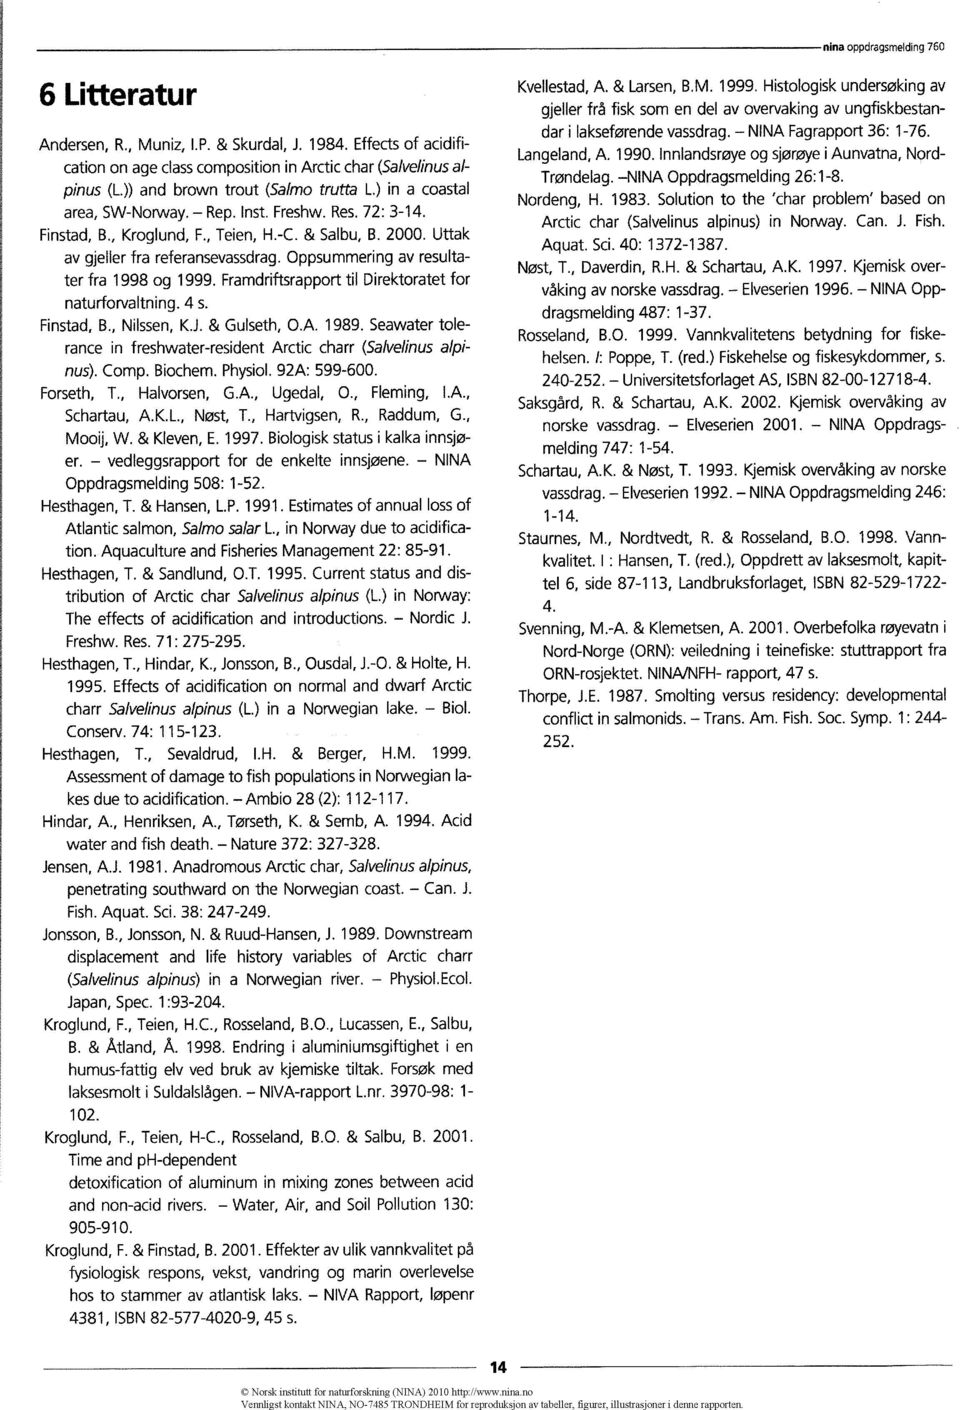 oppsummering av resultater fra 1998 og 1999. Framdriftsrapport til Direktoratet for naturforvaltning. 4 s. Finstad, B., Nilssen, K.J.& Gulseth, O.A. 1989.